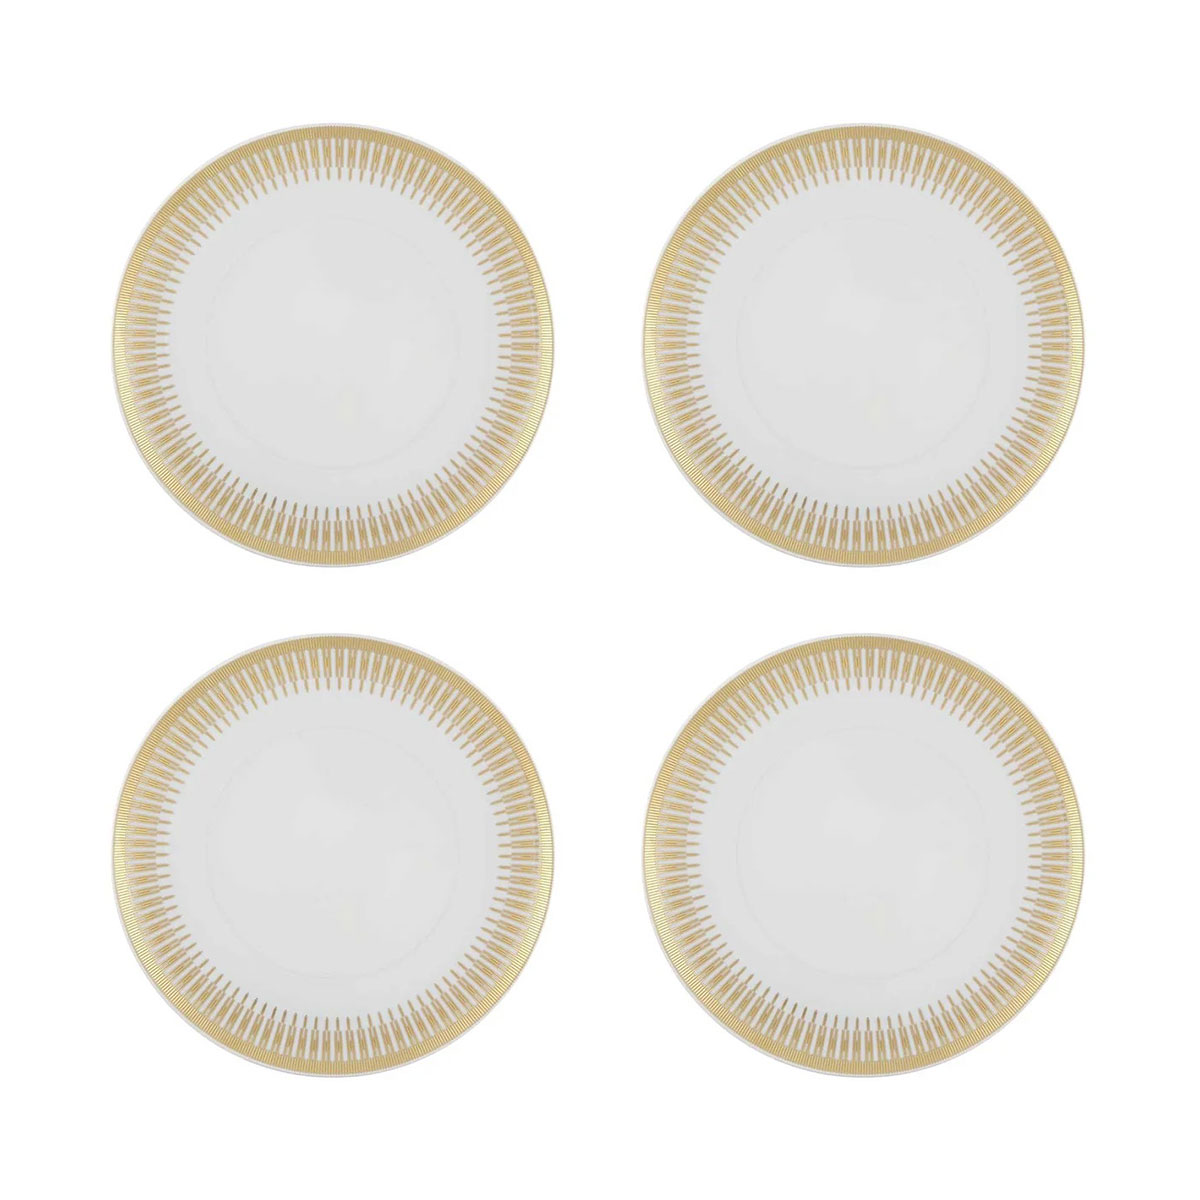 Vista Alegre Porcelain Gold Exotic Dinner Plate, Set of 4